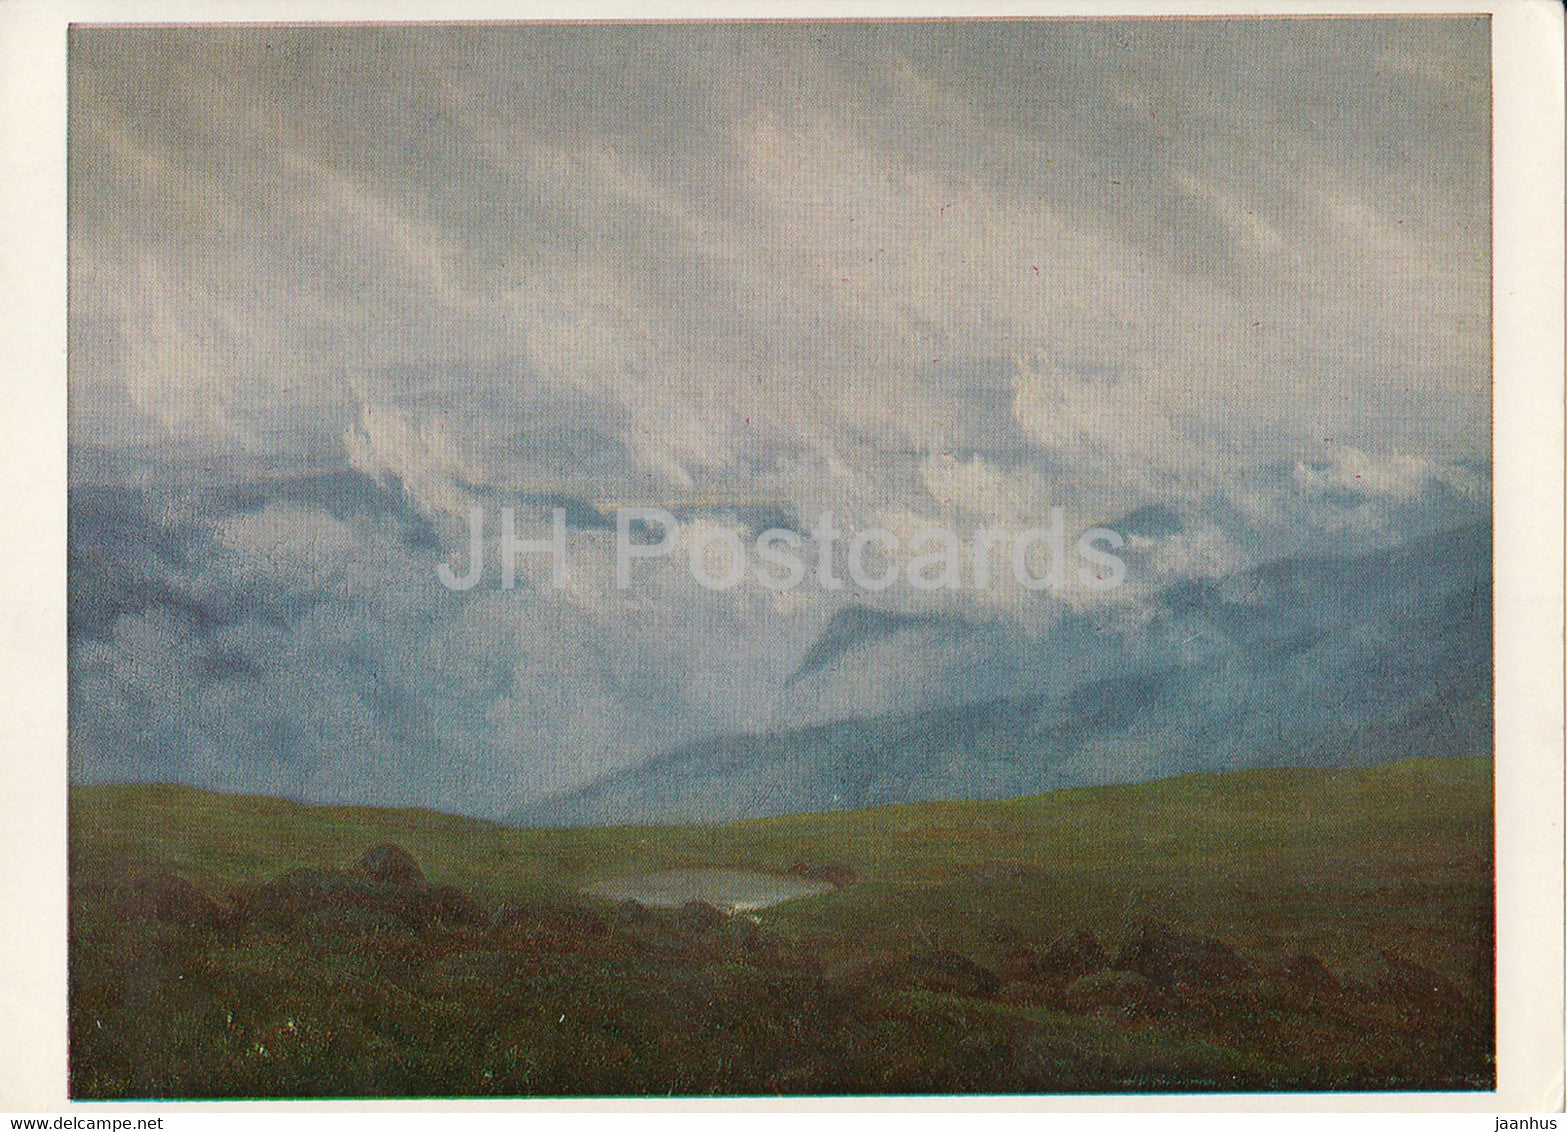 painting by Caspar David Friedrich - Ziehende Wolken - clouds - German art - Germany - unused - JH Postcards